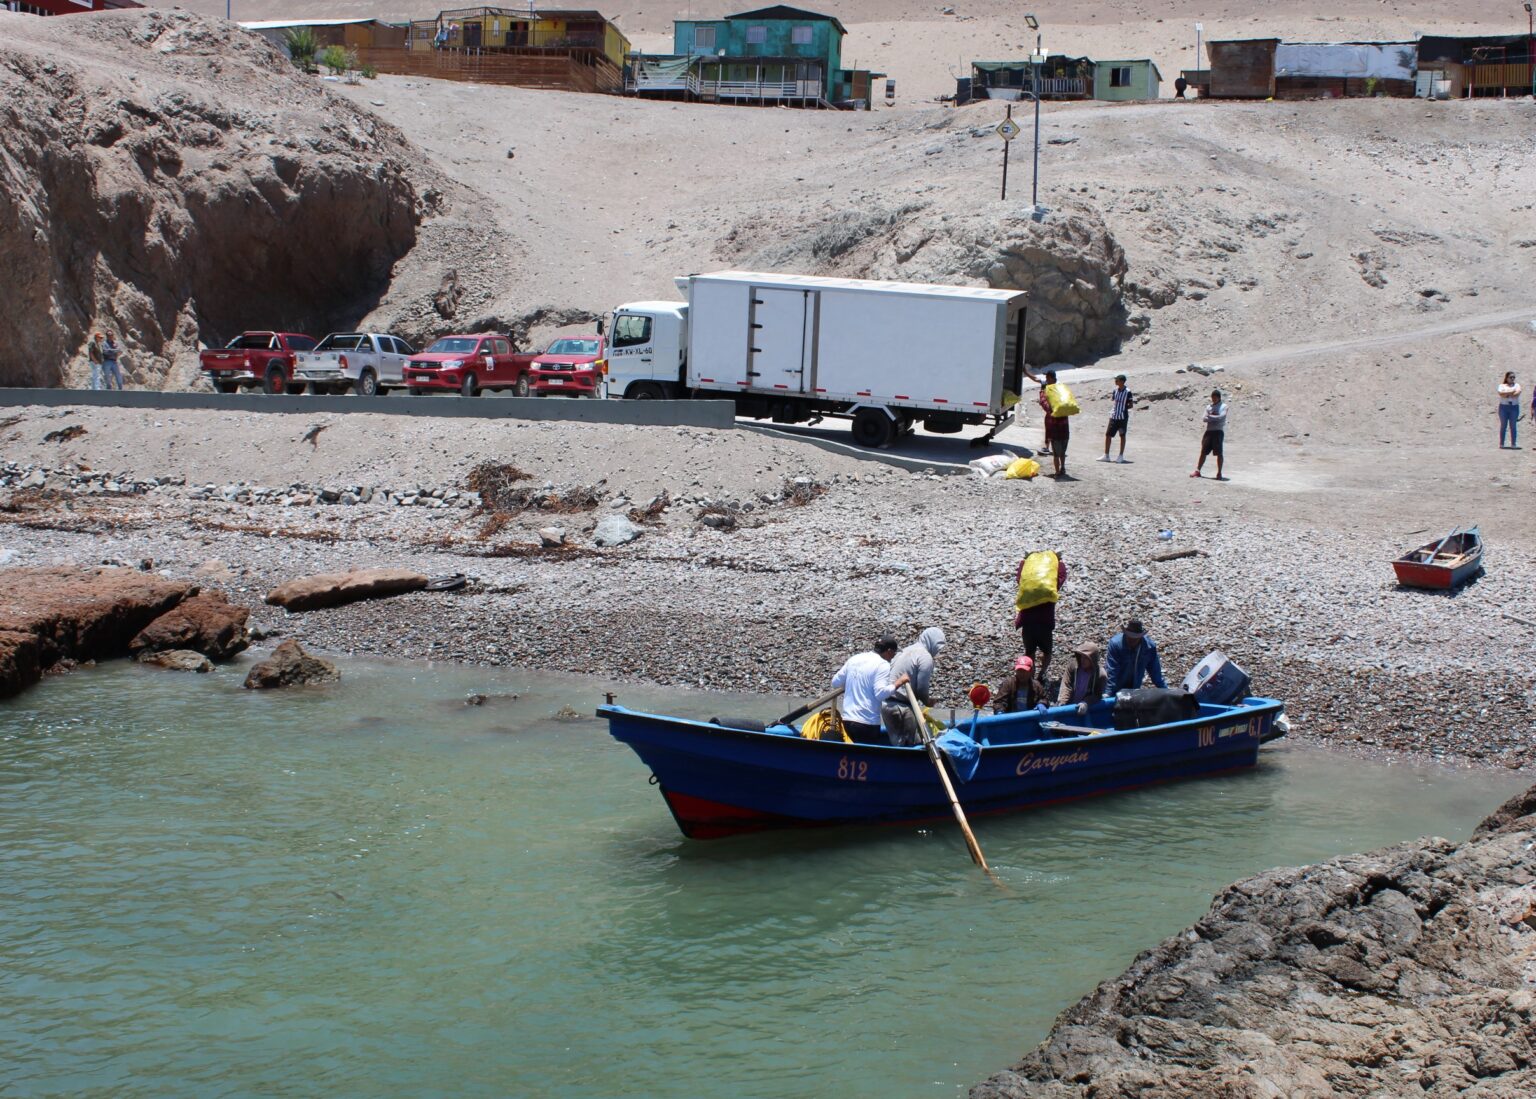 Tres sindicatos de pescadores de Tocopilla mejoran su infraestructura y equipamiento gracias a iniciativa de Minera El Abra